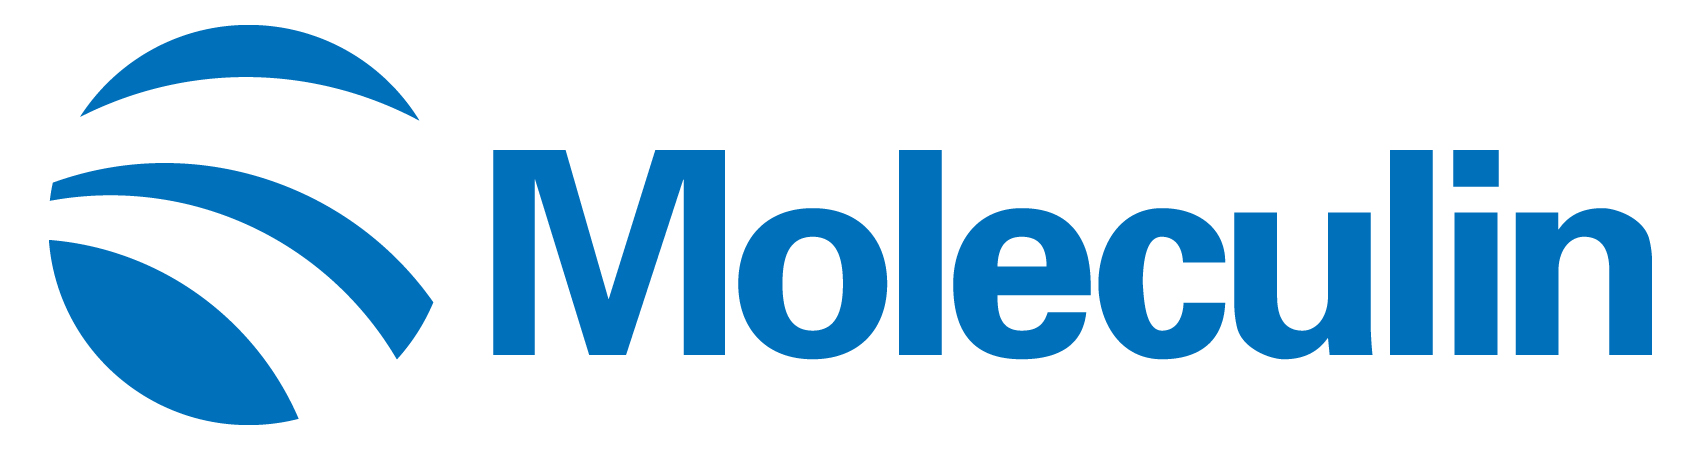 moleculin-logo_horiza48.jpg